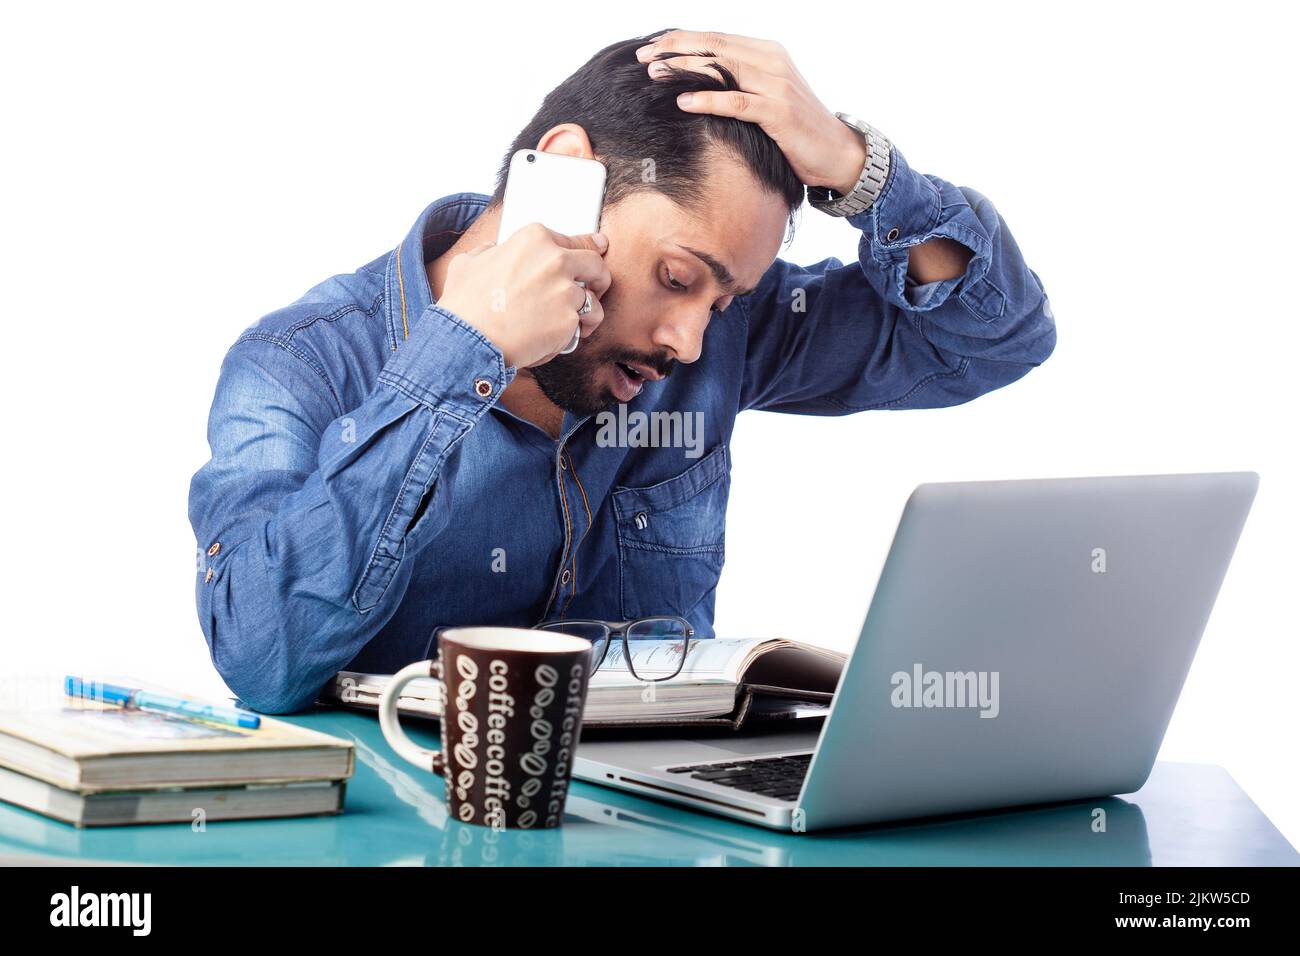 Angespannter und staunender Mann, der am Handy sprach und am Laptop arbeitete, mit Kaffeebecher auf dem Schreibtisch auf isoliertem weißem Hintergrund Stockfoto